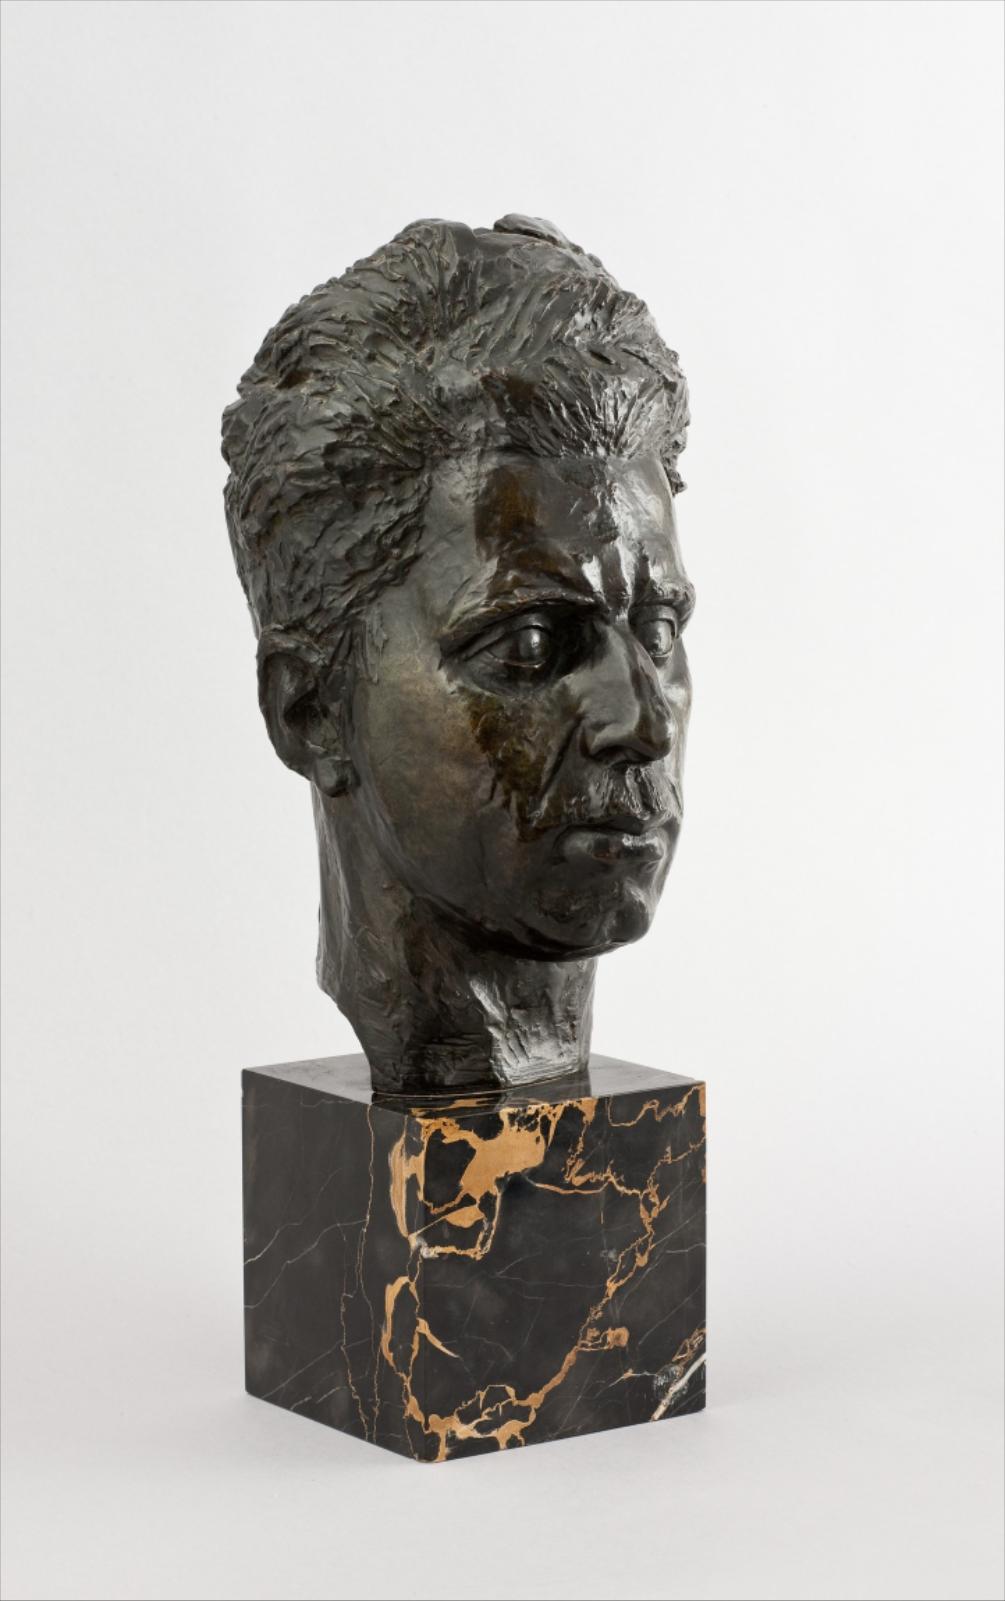 Buste en bronze par Germaine Richier représentant le buste d'un homme